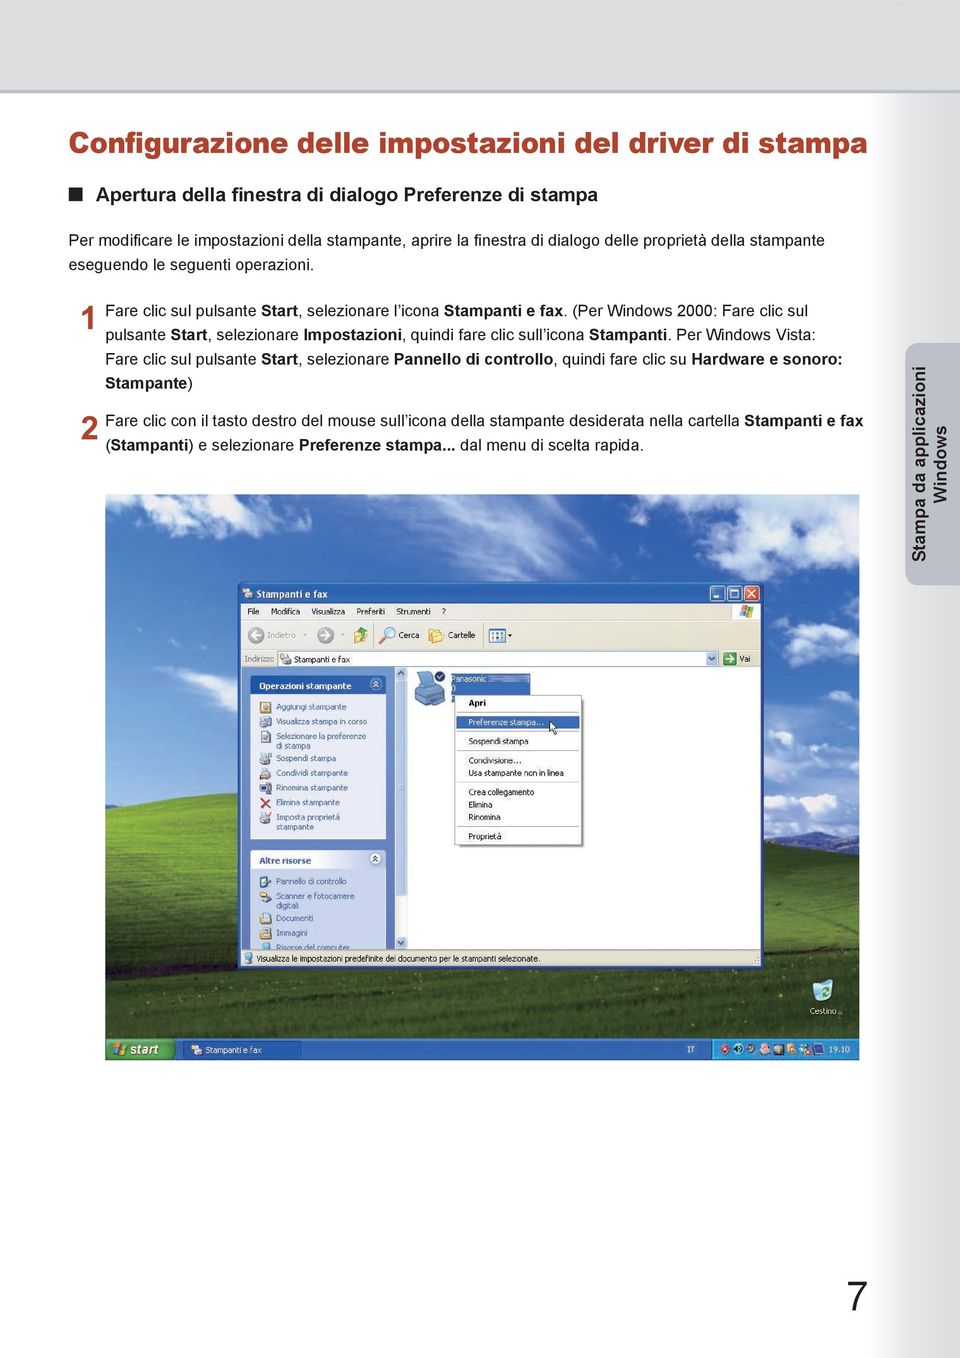 (Per Windows 000: Fare clic sul pulsante Start, selezionare Impostazioni, quindi fare clic sull icona Stampanti.